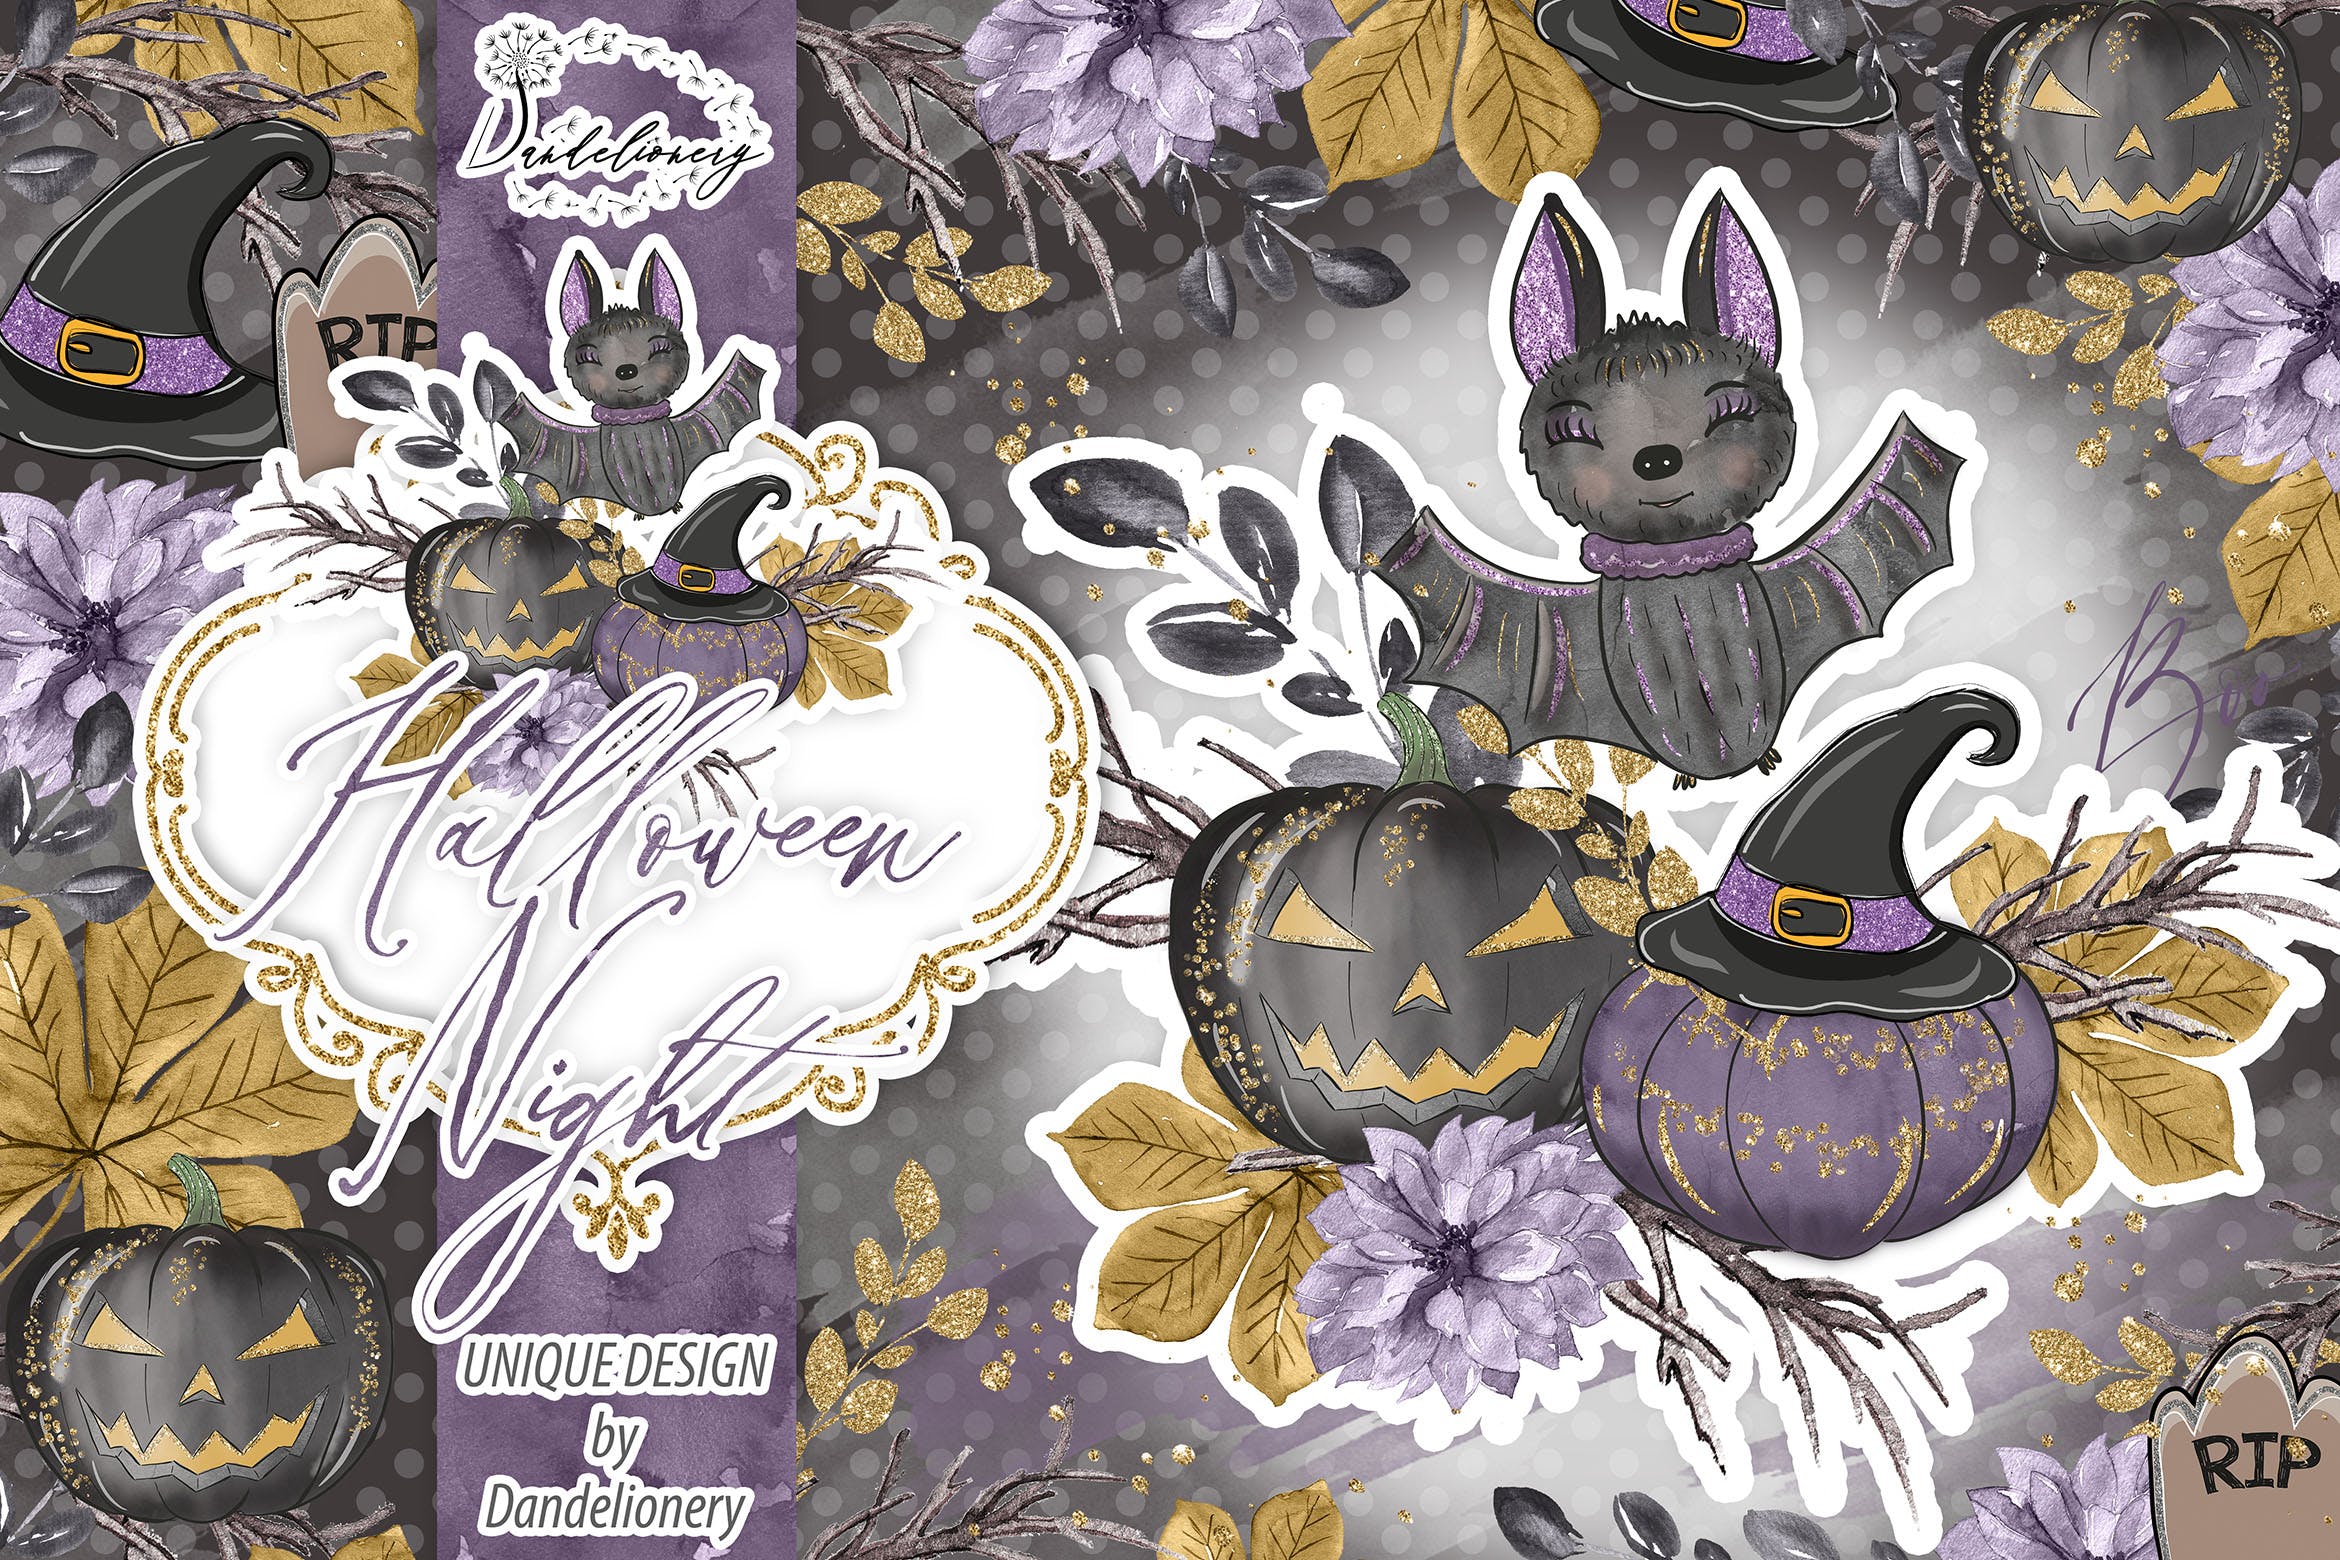 万圣节之夜节日主题水彩手绘剪贴画PNG素材 Halloween Night design插图